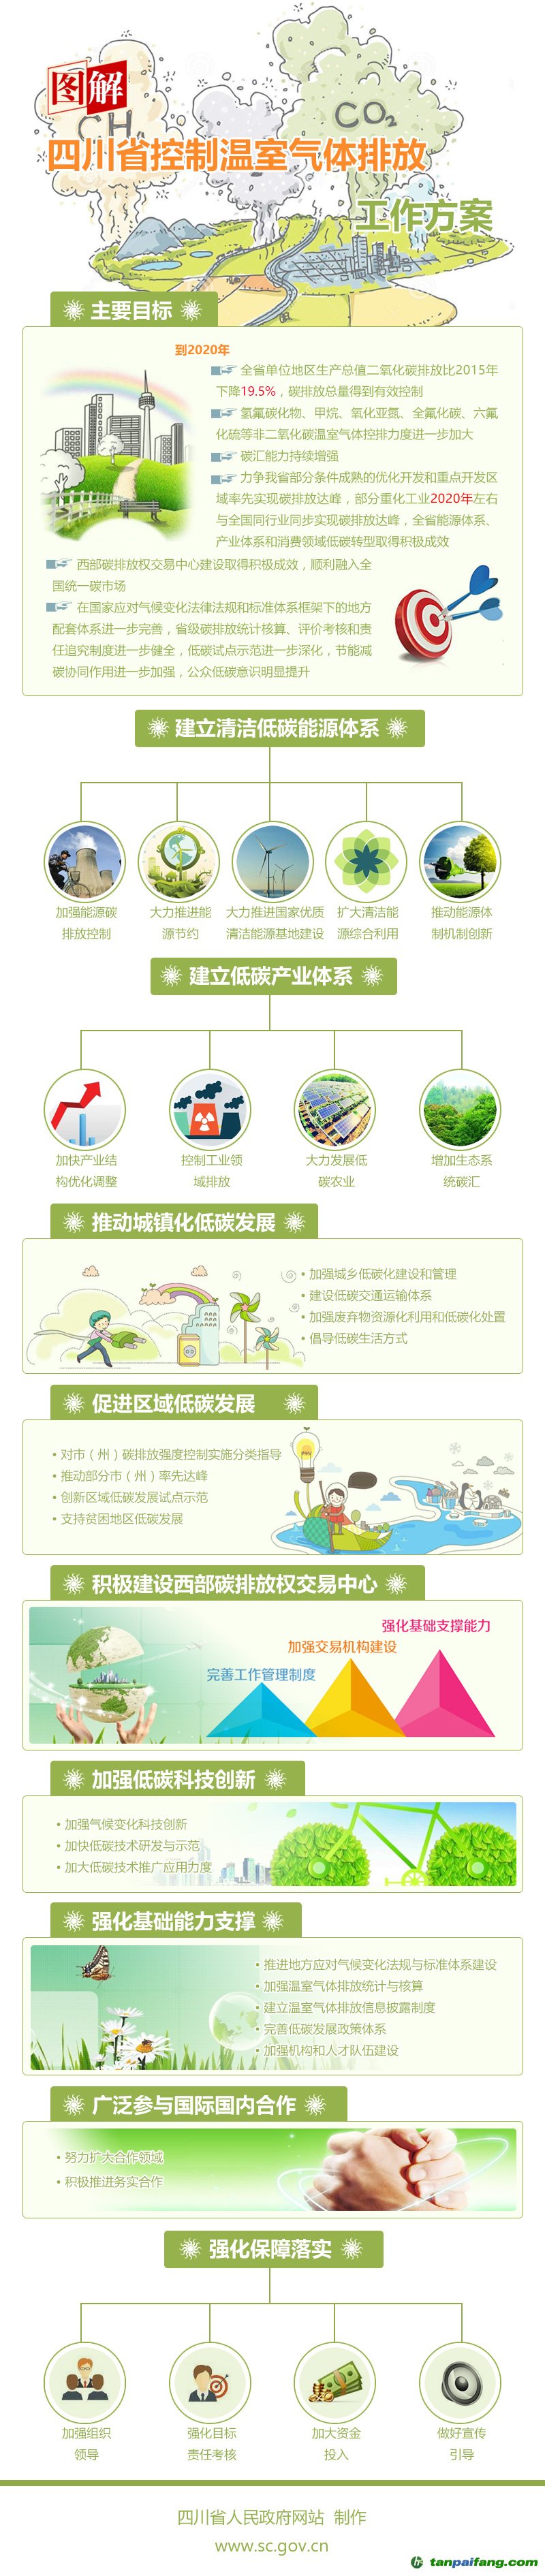 四川省控制温室气体排放工作方案的